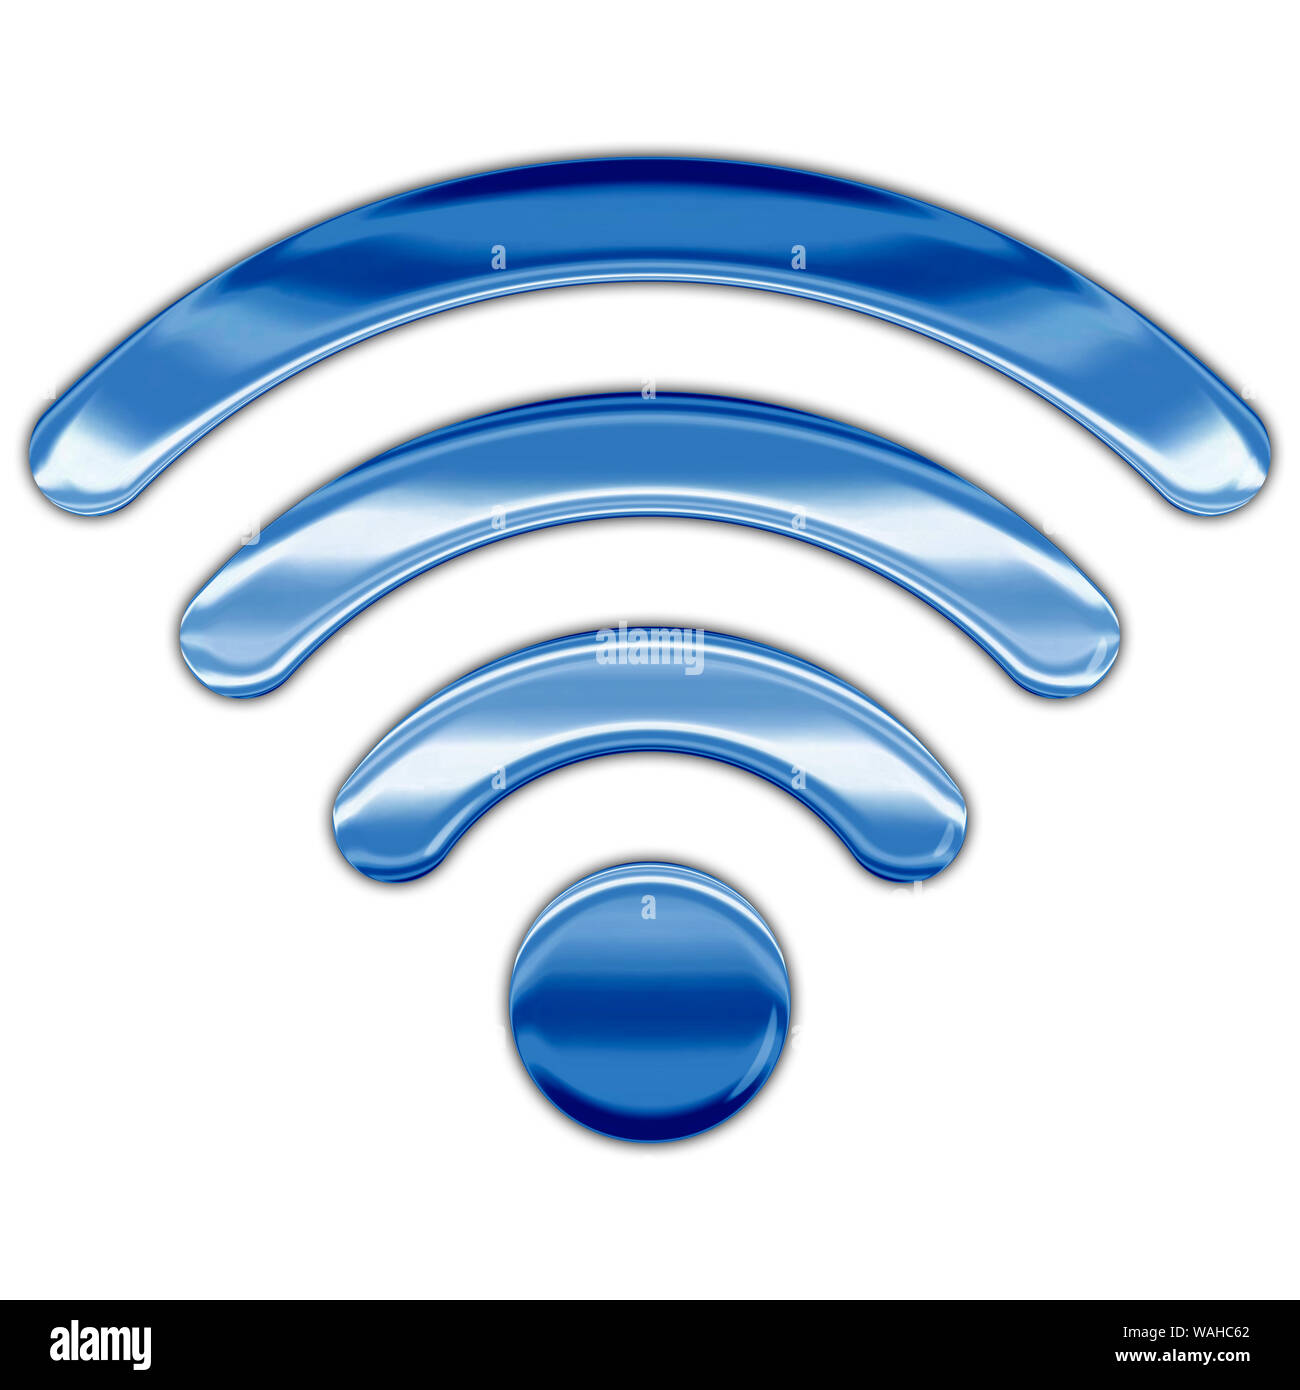 Simbolo Wi-Fi, uno stile metallizzato, elaborazione grafica Foto Stock